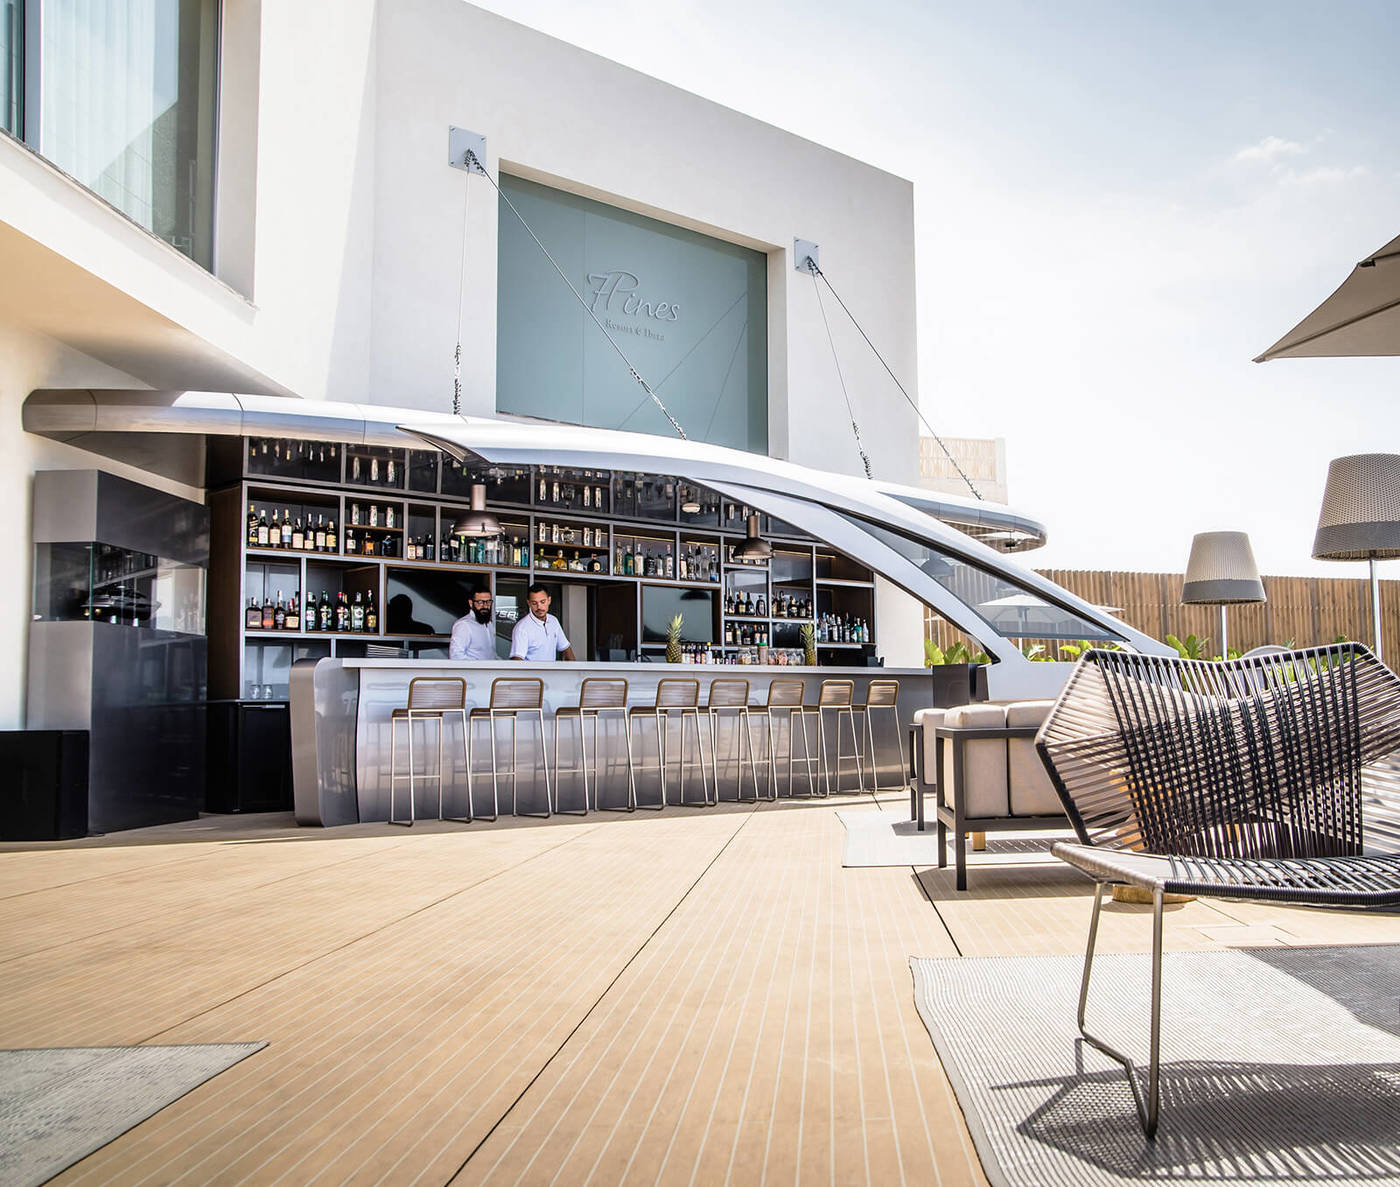 imagen 1 de Pershing Yachts Terrace, en el 7Pines de Ibiza, es la terraza más glamourosa del verano.